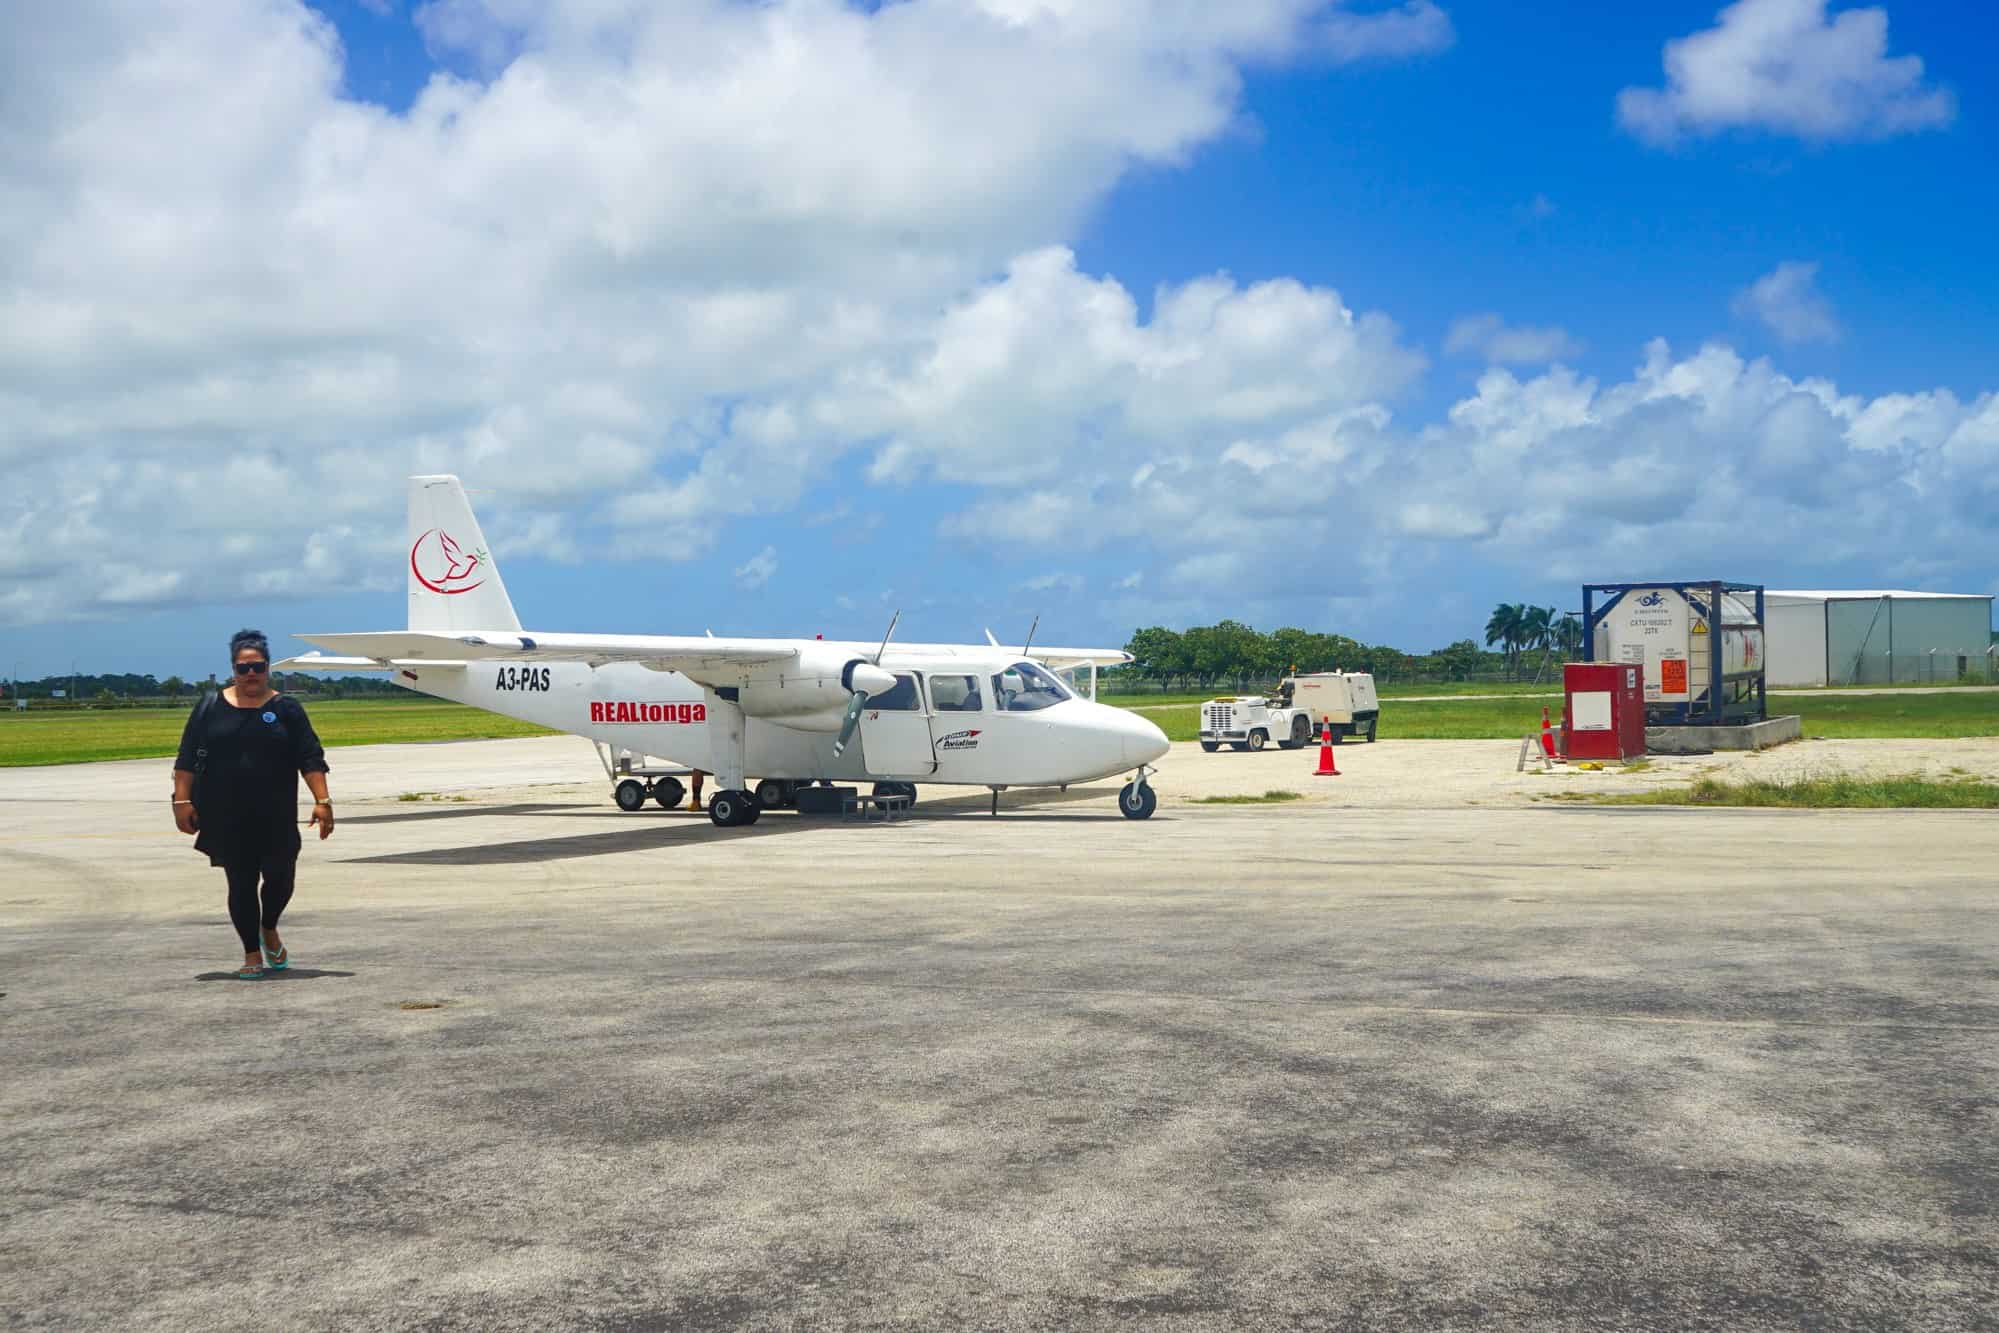 Real Tonga plane from Tongatapu to Eua-1